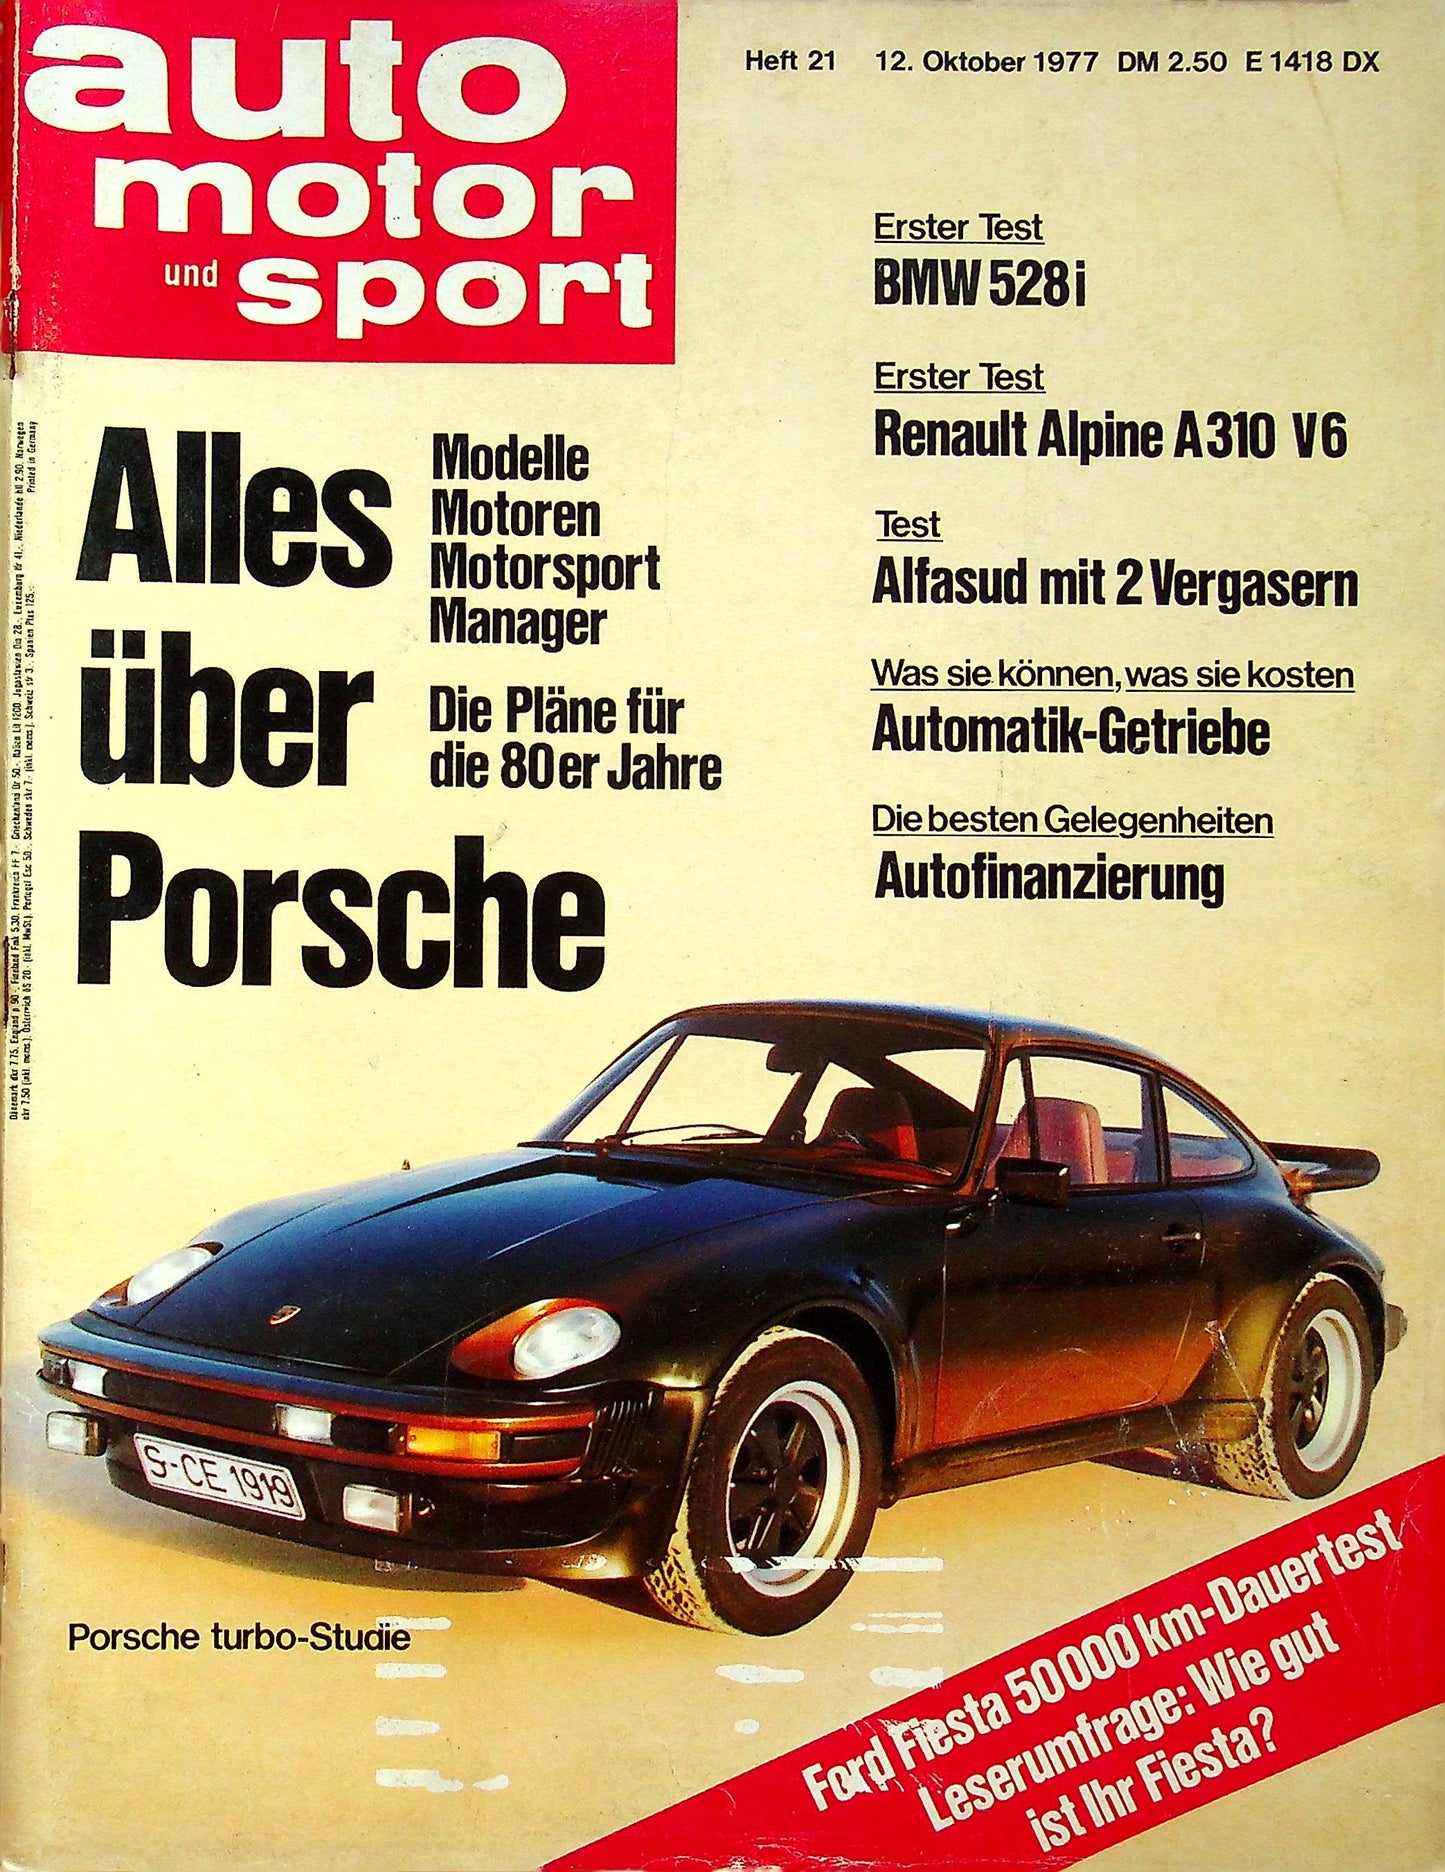 Auto Motor und Sport 21/1977